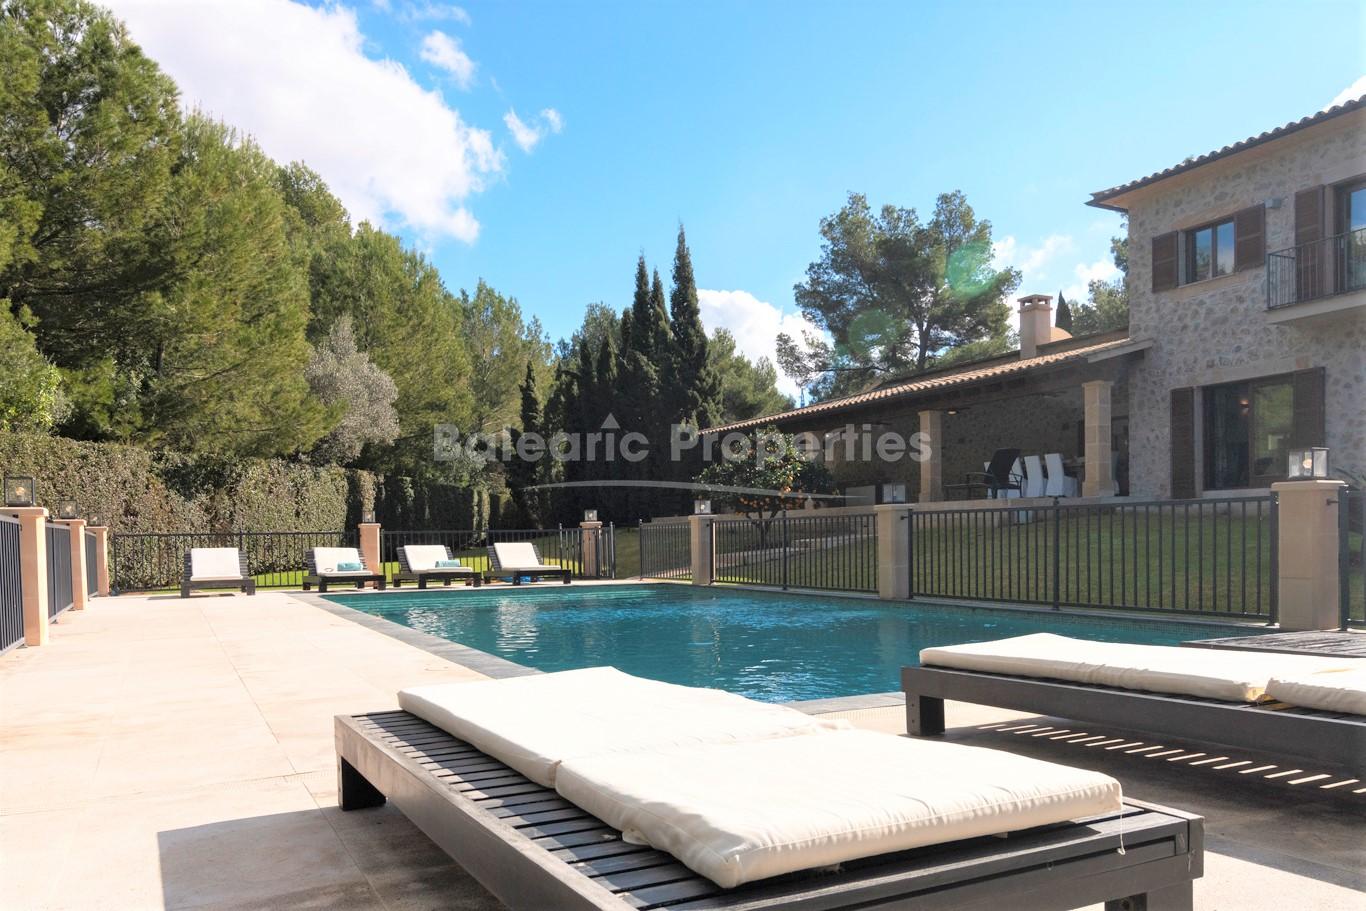 Encantadora villa familiar en venta en la prestigiosa zona de Santa Ponsa, Mallorca